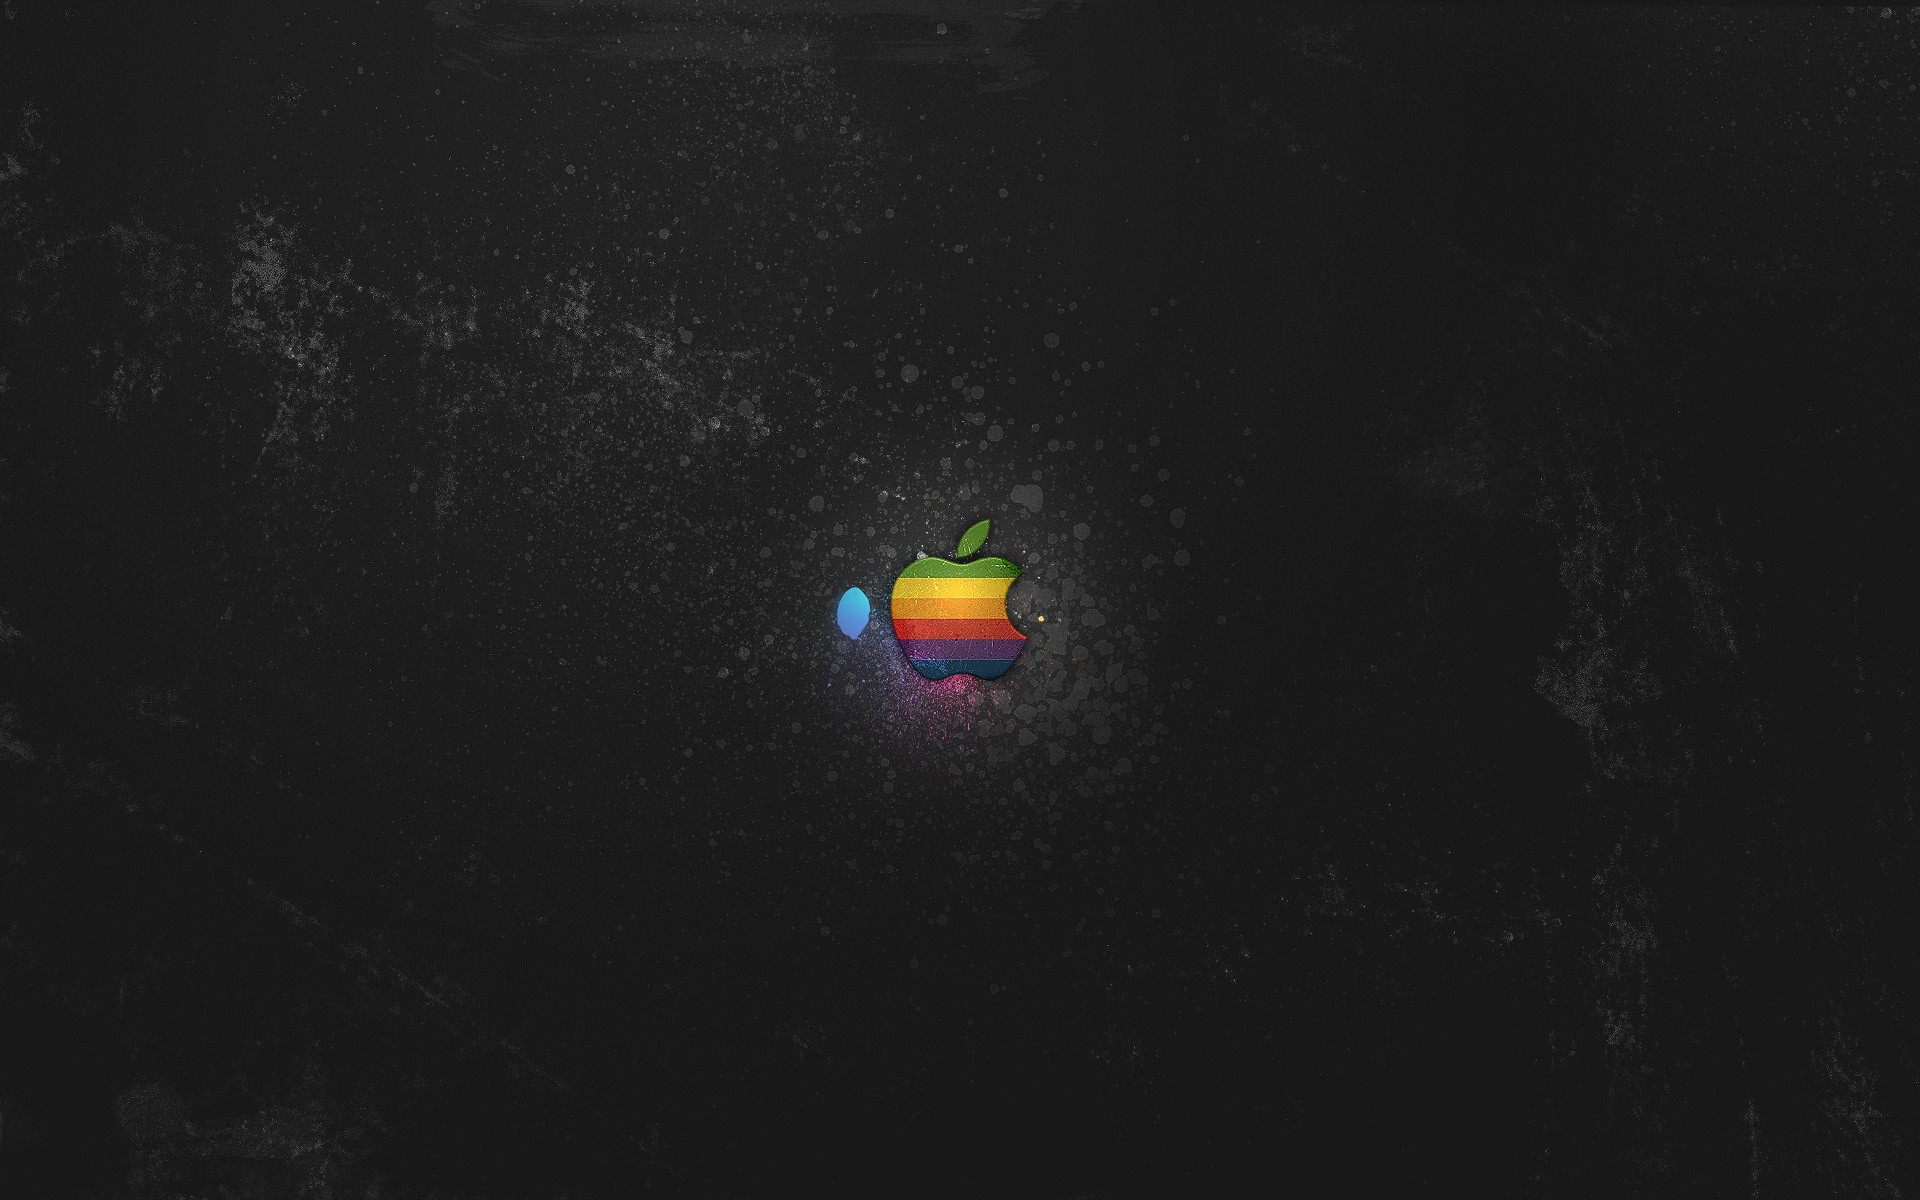 темнота, Эппл (Apple), логотипы - обои на рабочий стол